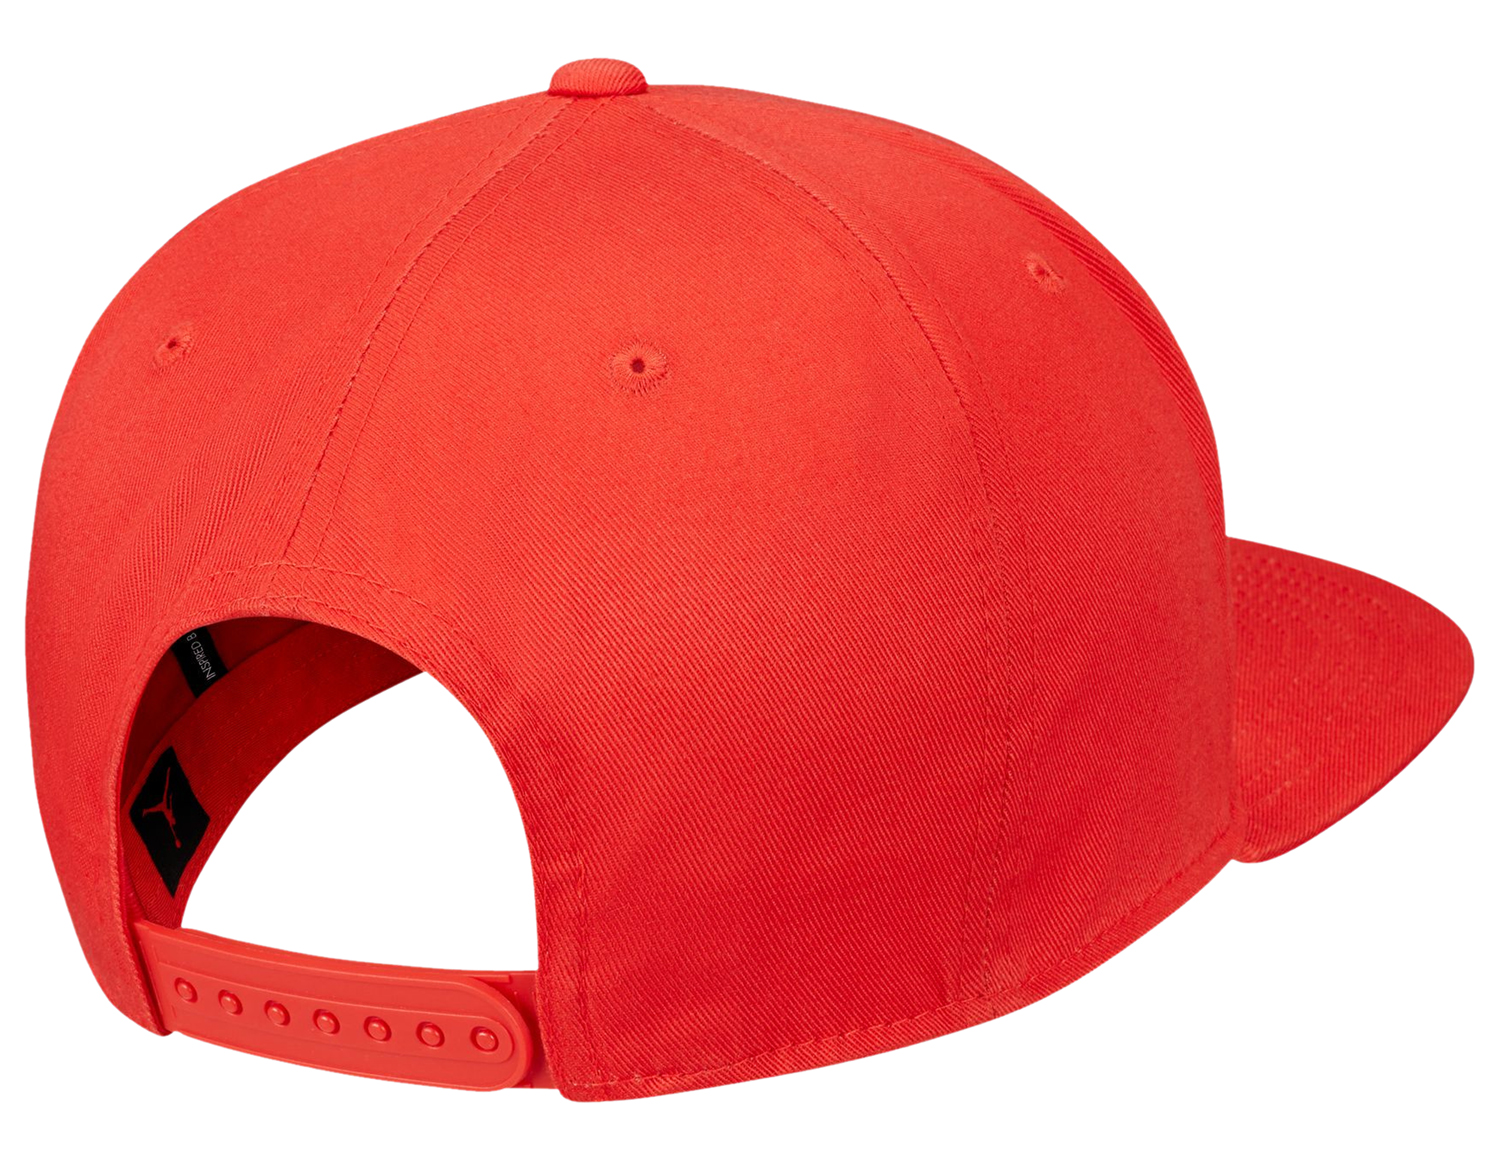 air-jordan-9-chile-red-hat-2